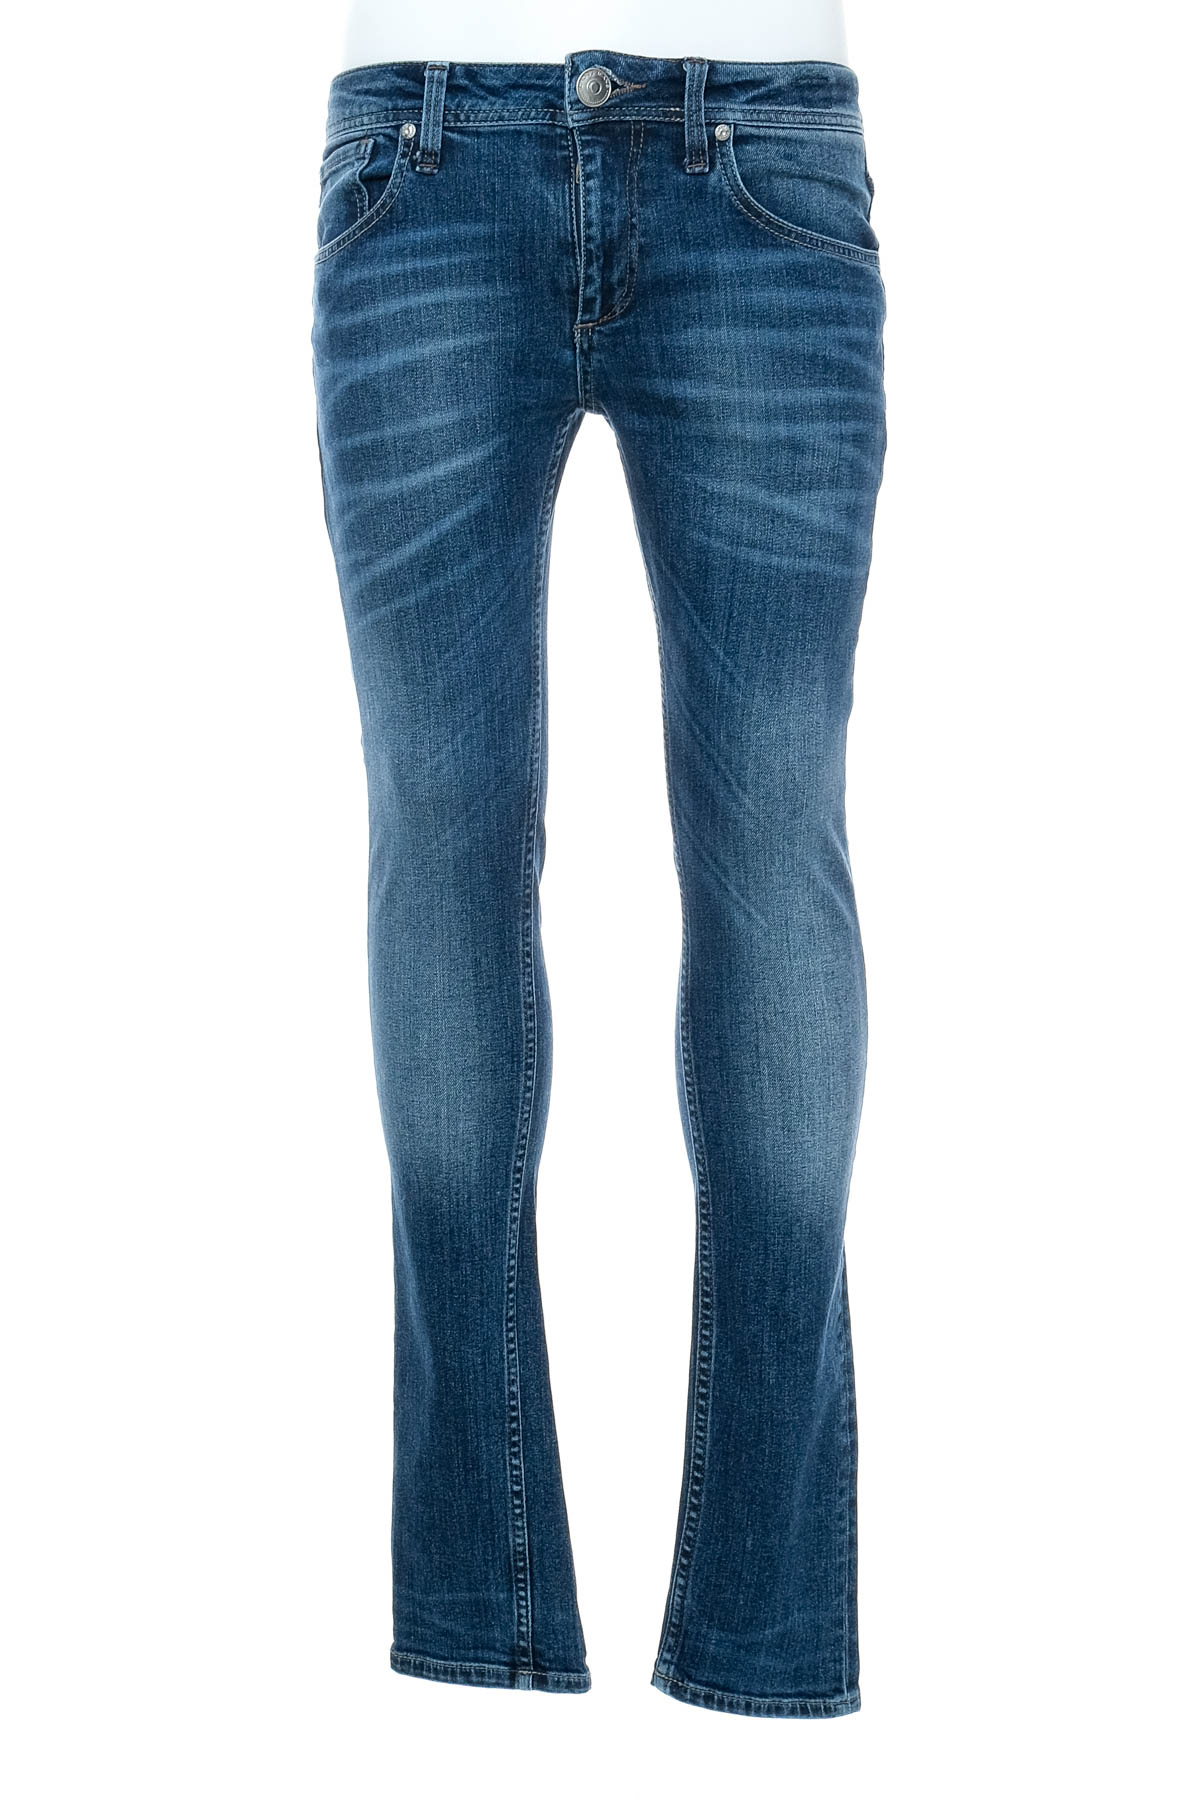 Jeans pentru bărbăți - Cross Jeans - 0